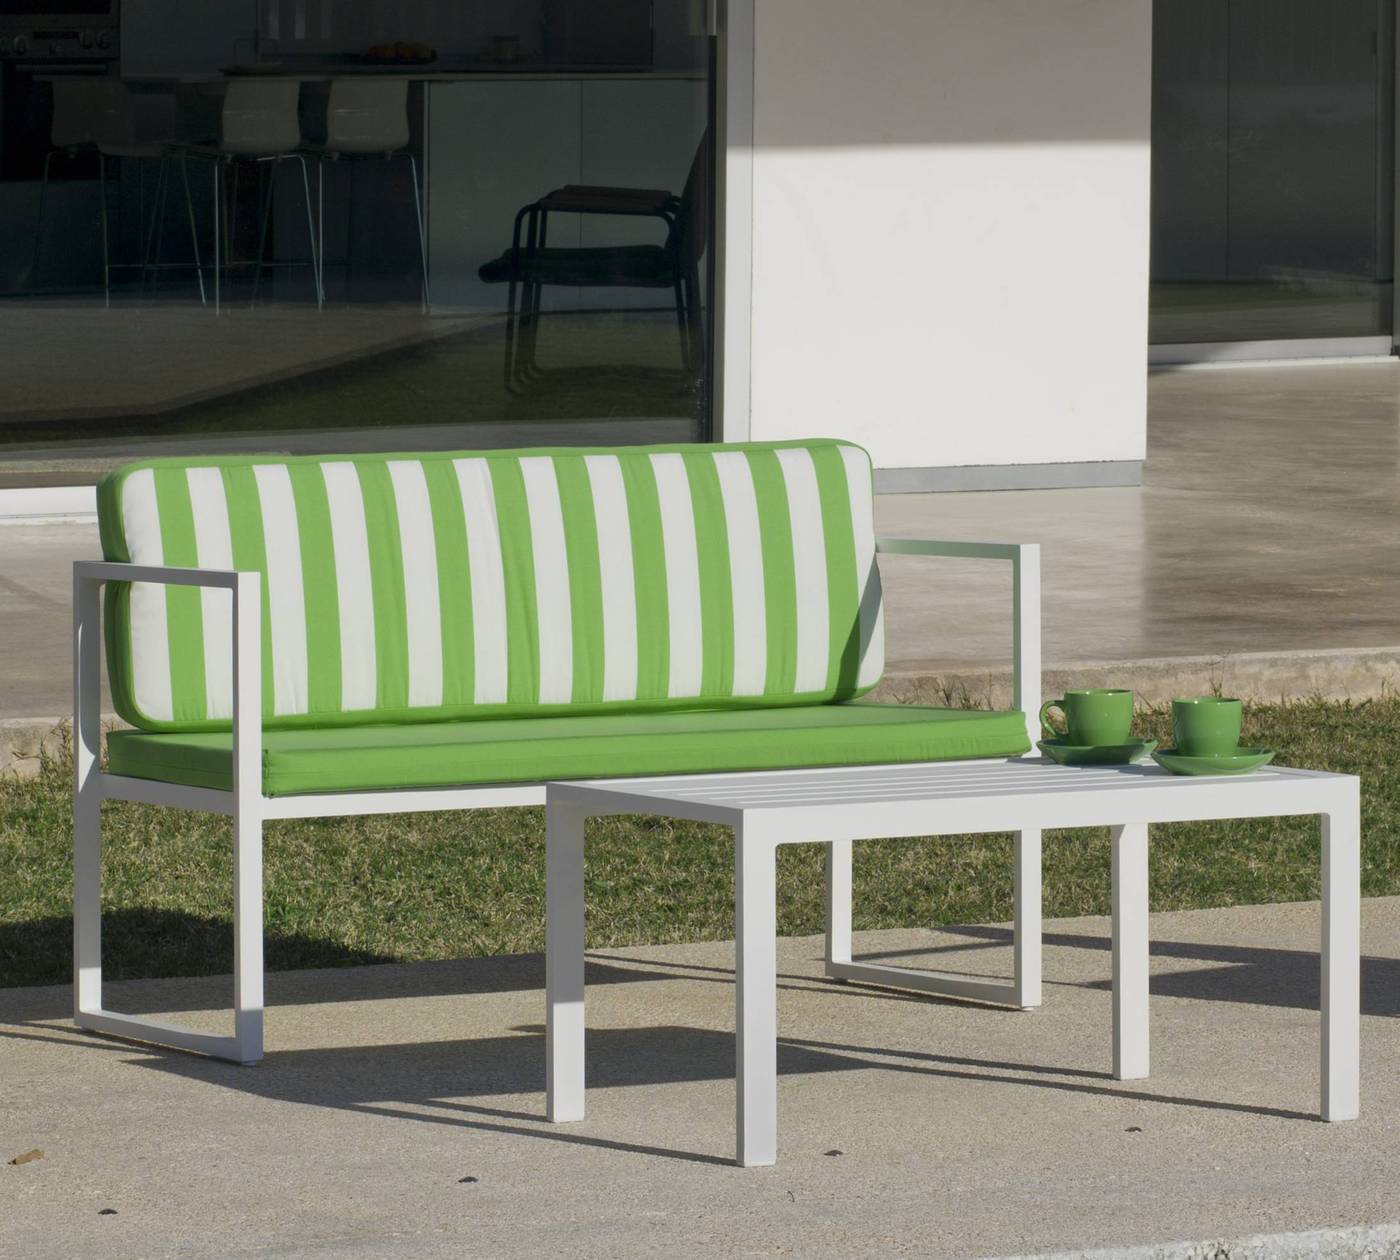 Set Aluminio Long Beach-7 - Conjunto de aluminio apilable: sofá 2 plazas + 2 sillones + mesa de centro + cojines. Disponible en color blanco o antracita.